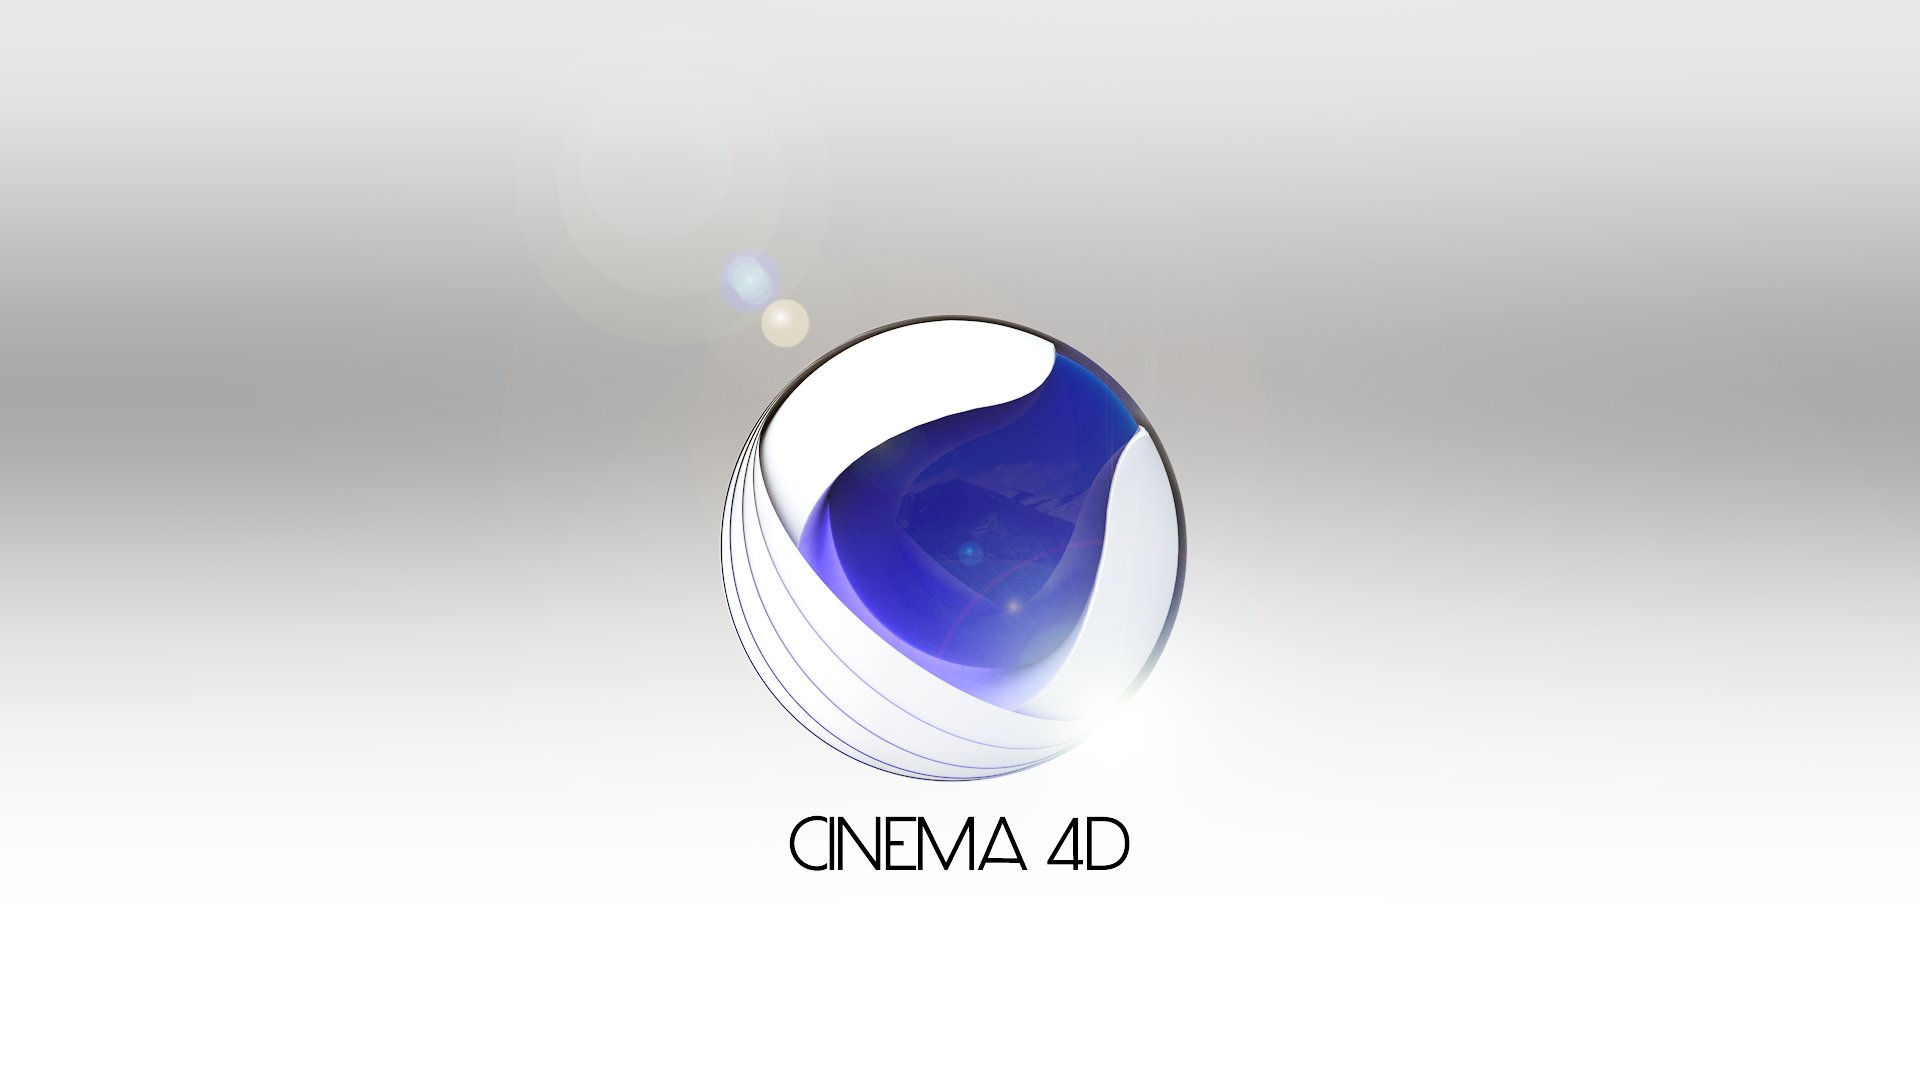 ArtStation - Cinema 4D wallpaper